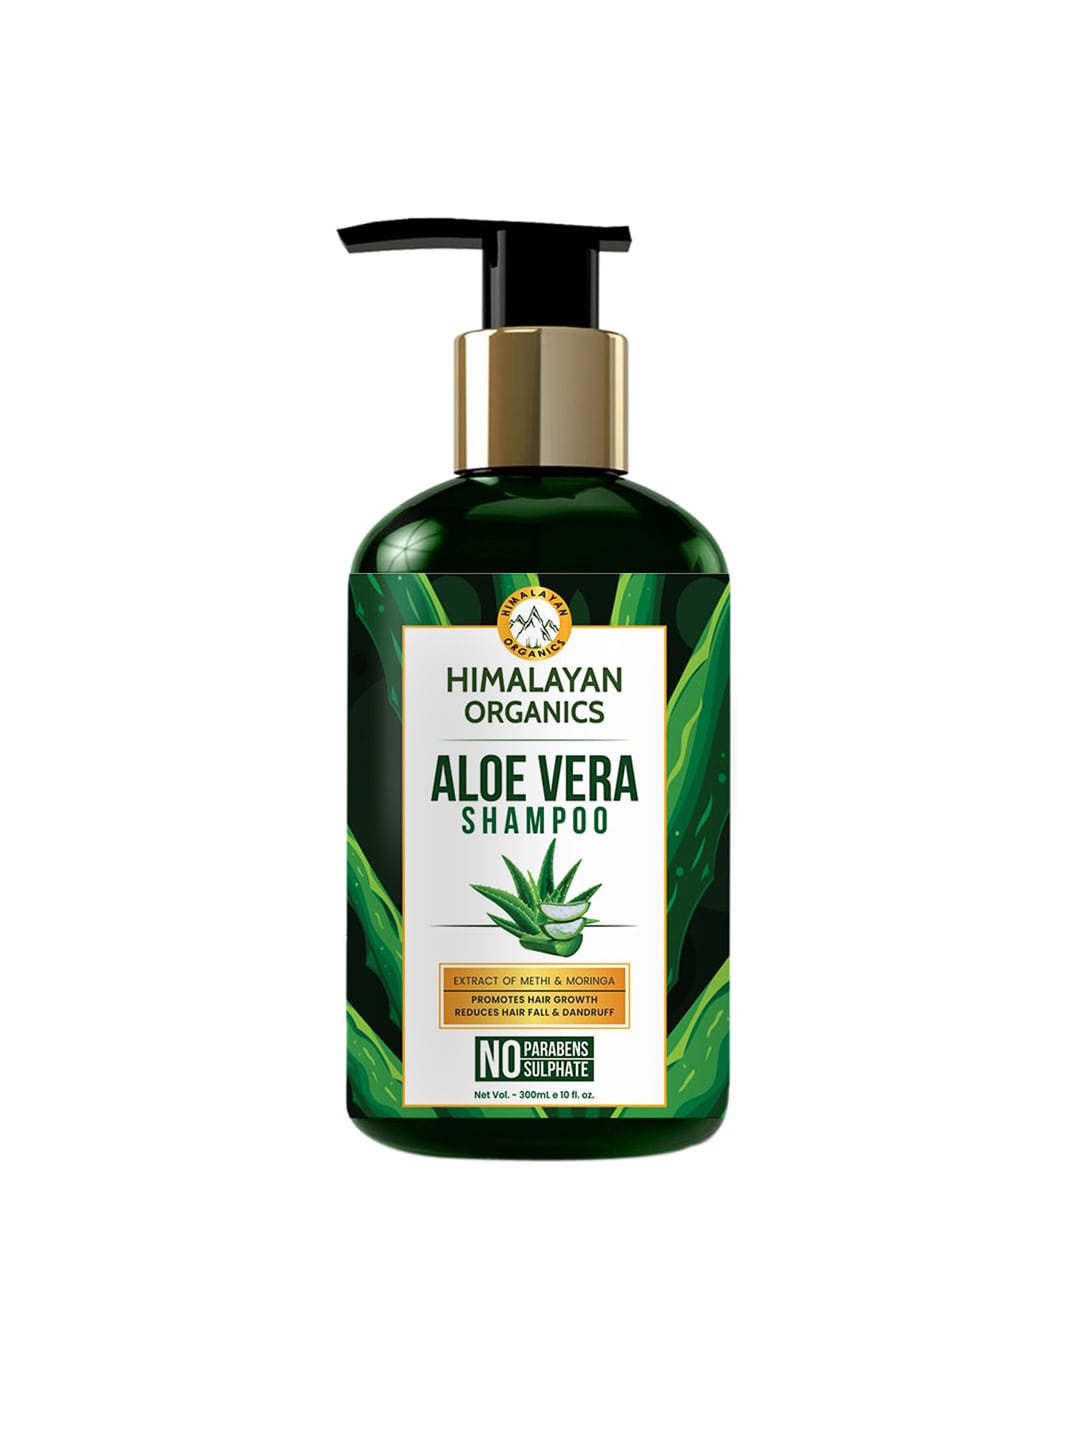 Himalayan Organics Aloevera Shampoo 300ml Price in India